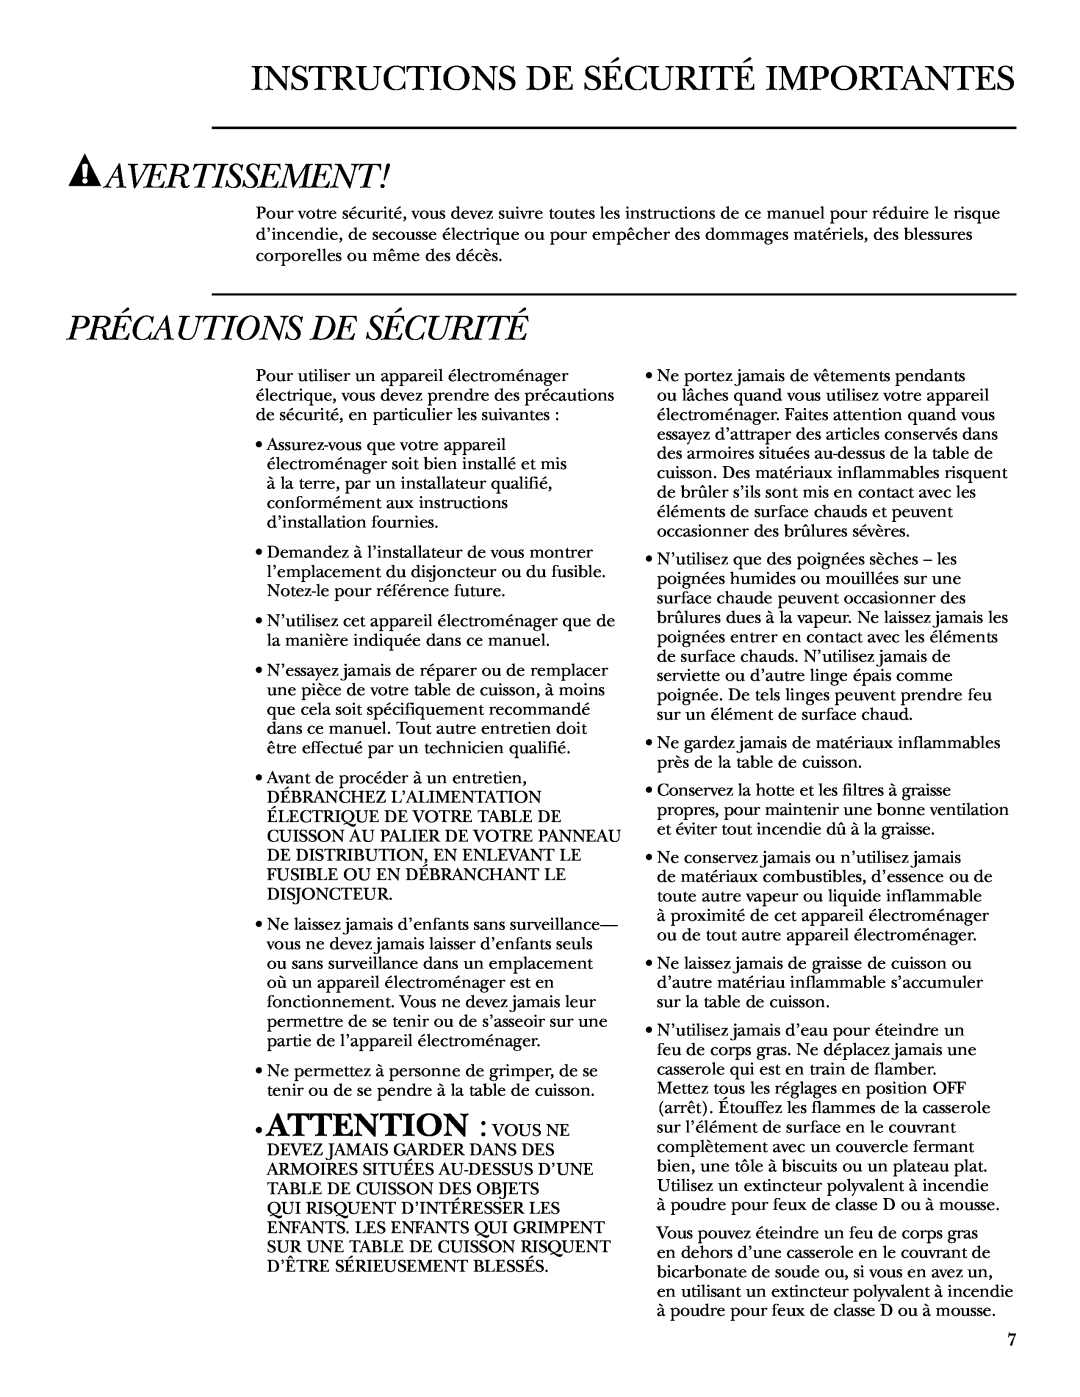 GE ZEU36K owner manual Instructions De Sécurité Importantes, Avertissement, Précautions De Sécurité, Attention Vous Ne 